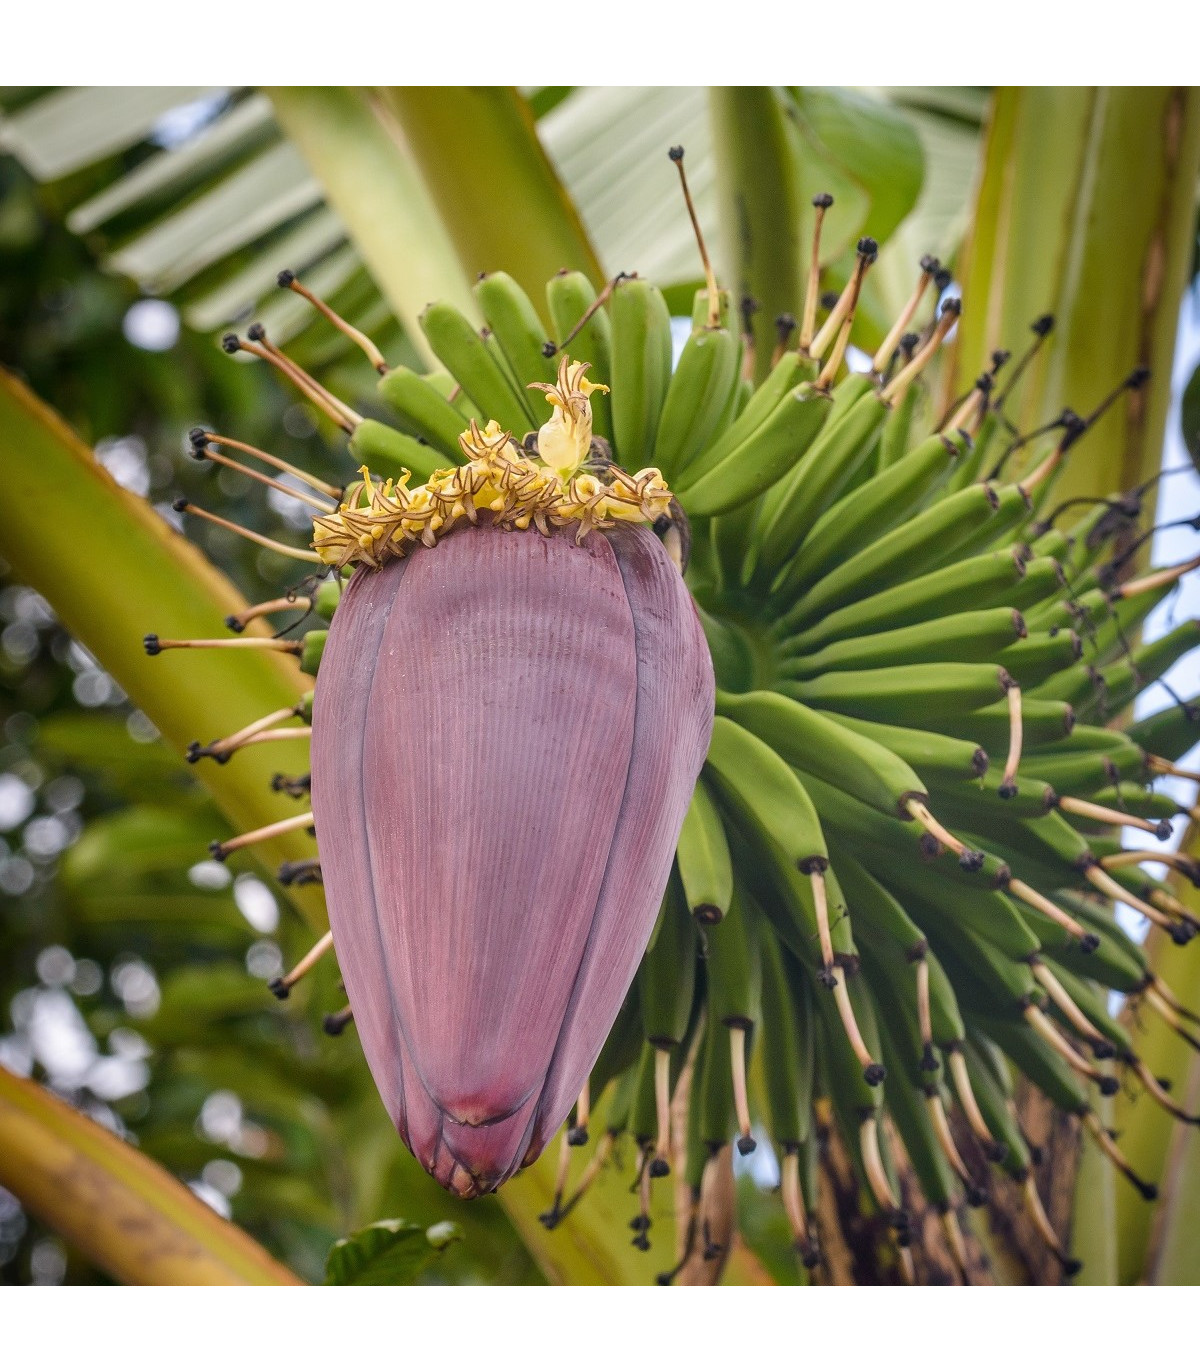 Banánovník Dwarf Cavendish - Musa Acuminata - semená banánovníka - 5 ks